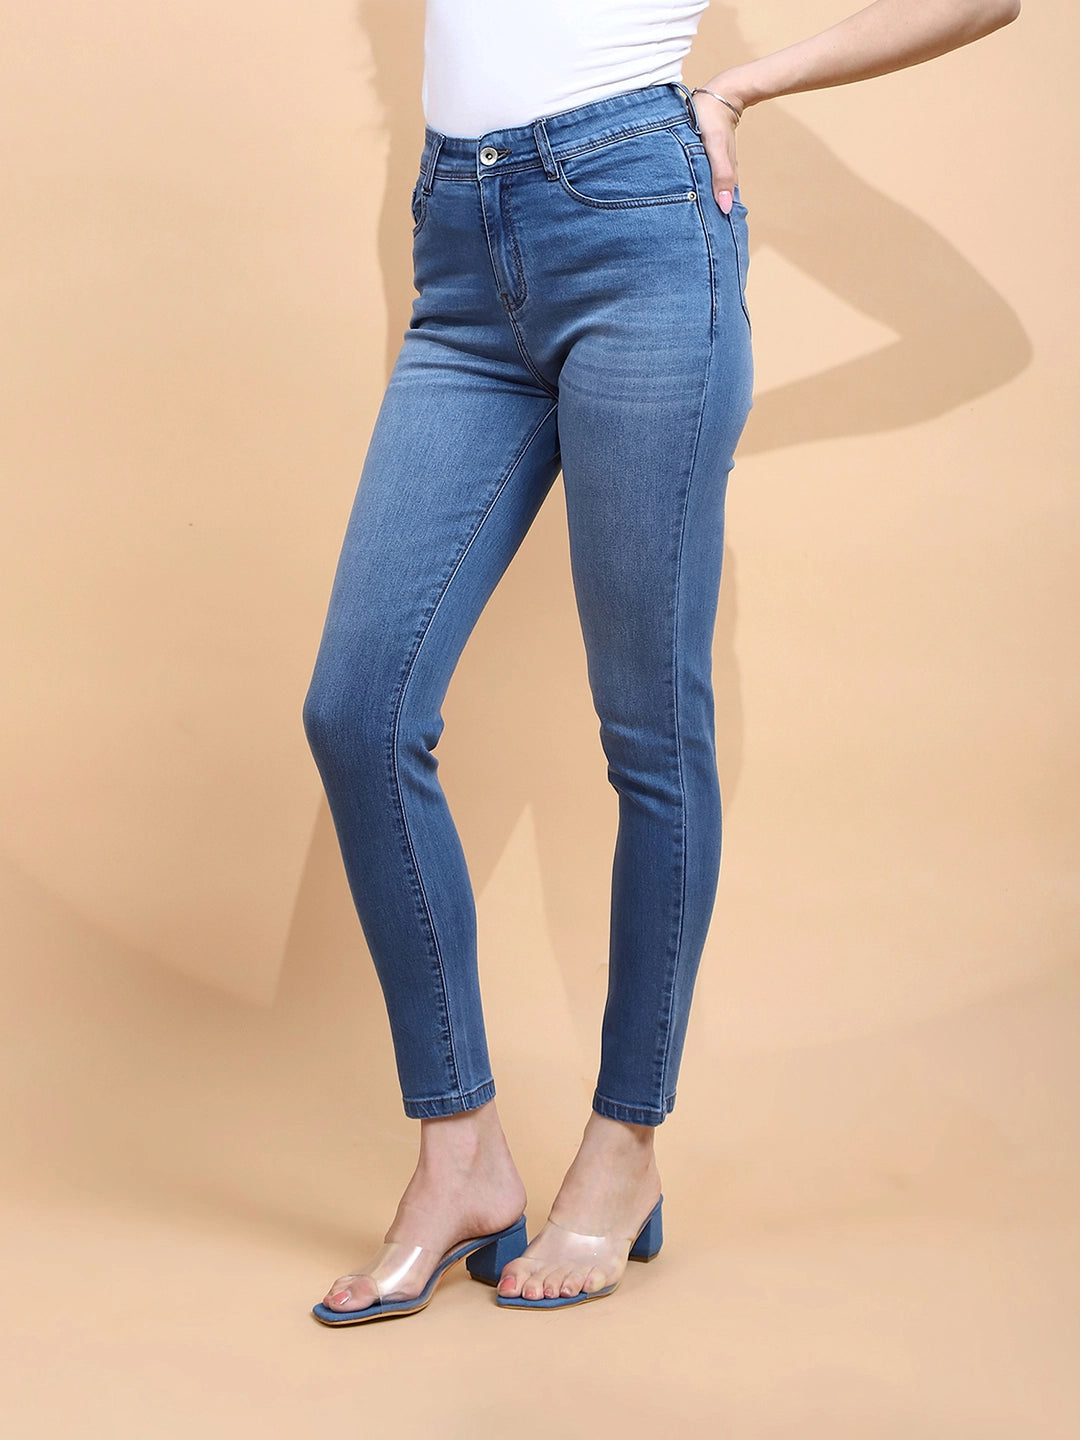 Medium Blue Cotton Blend Slim Fit Jeans For Women